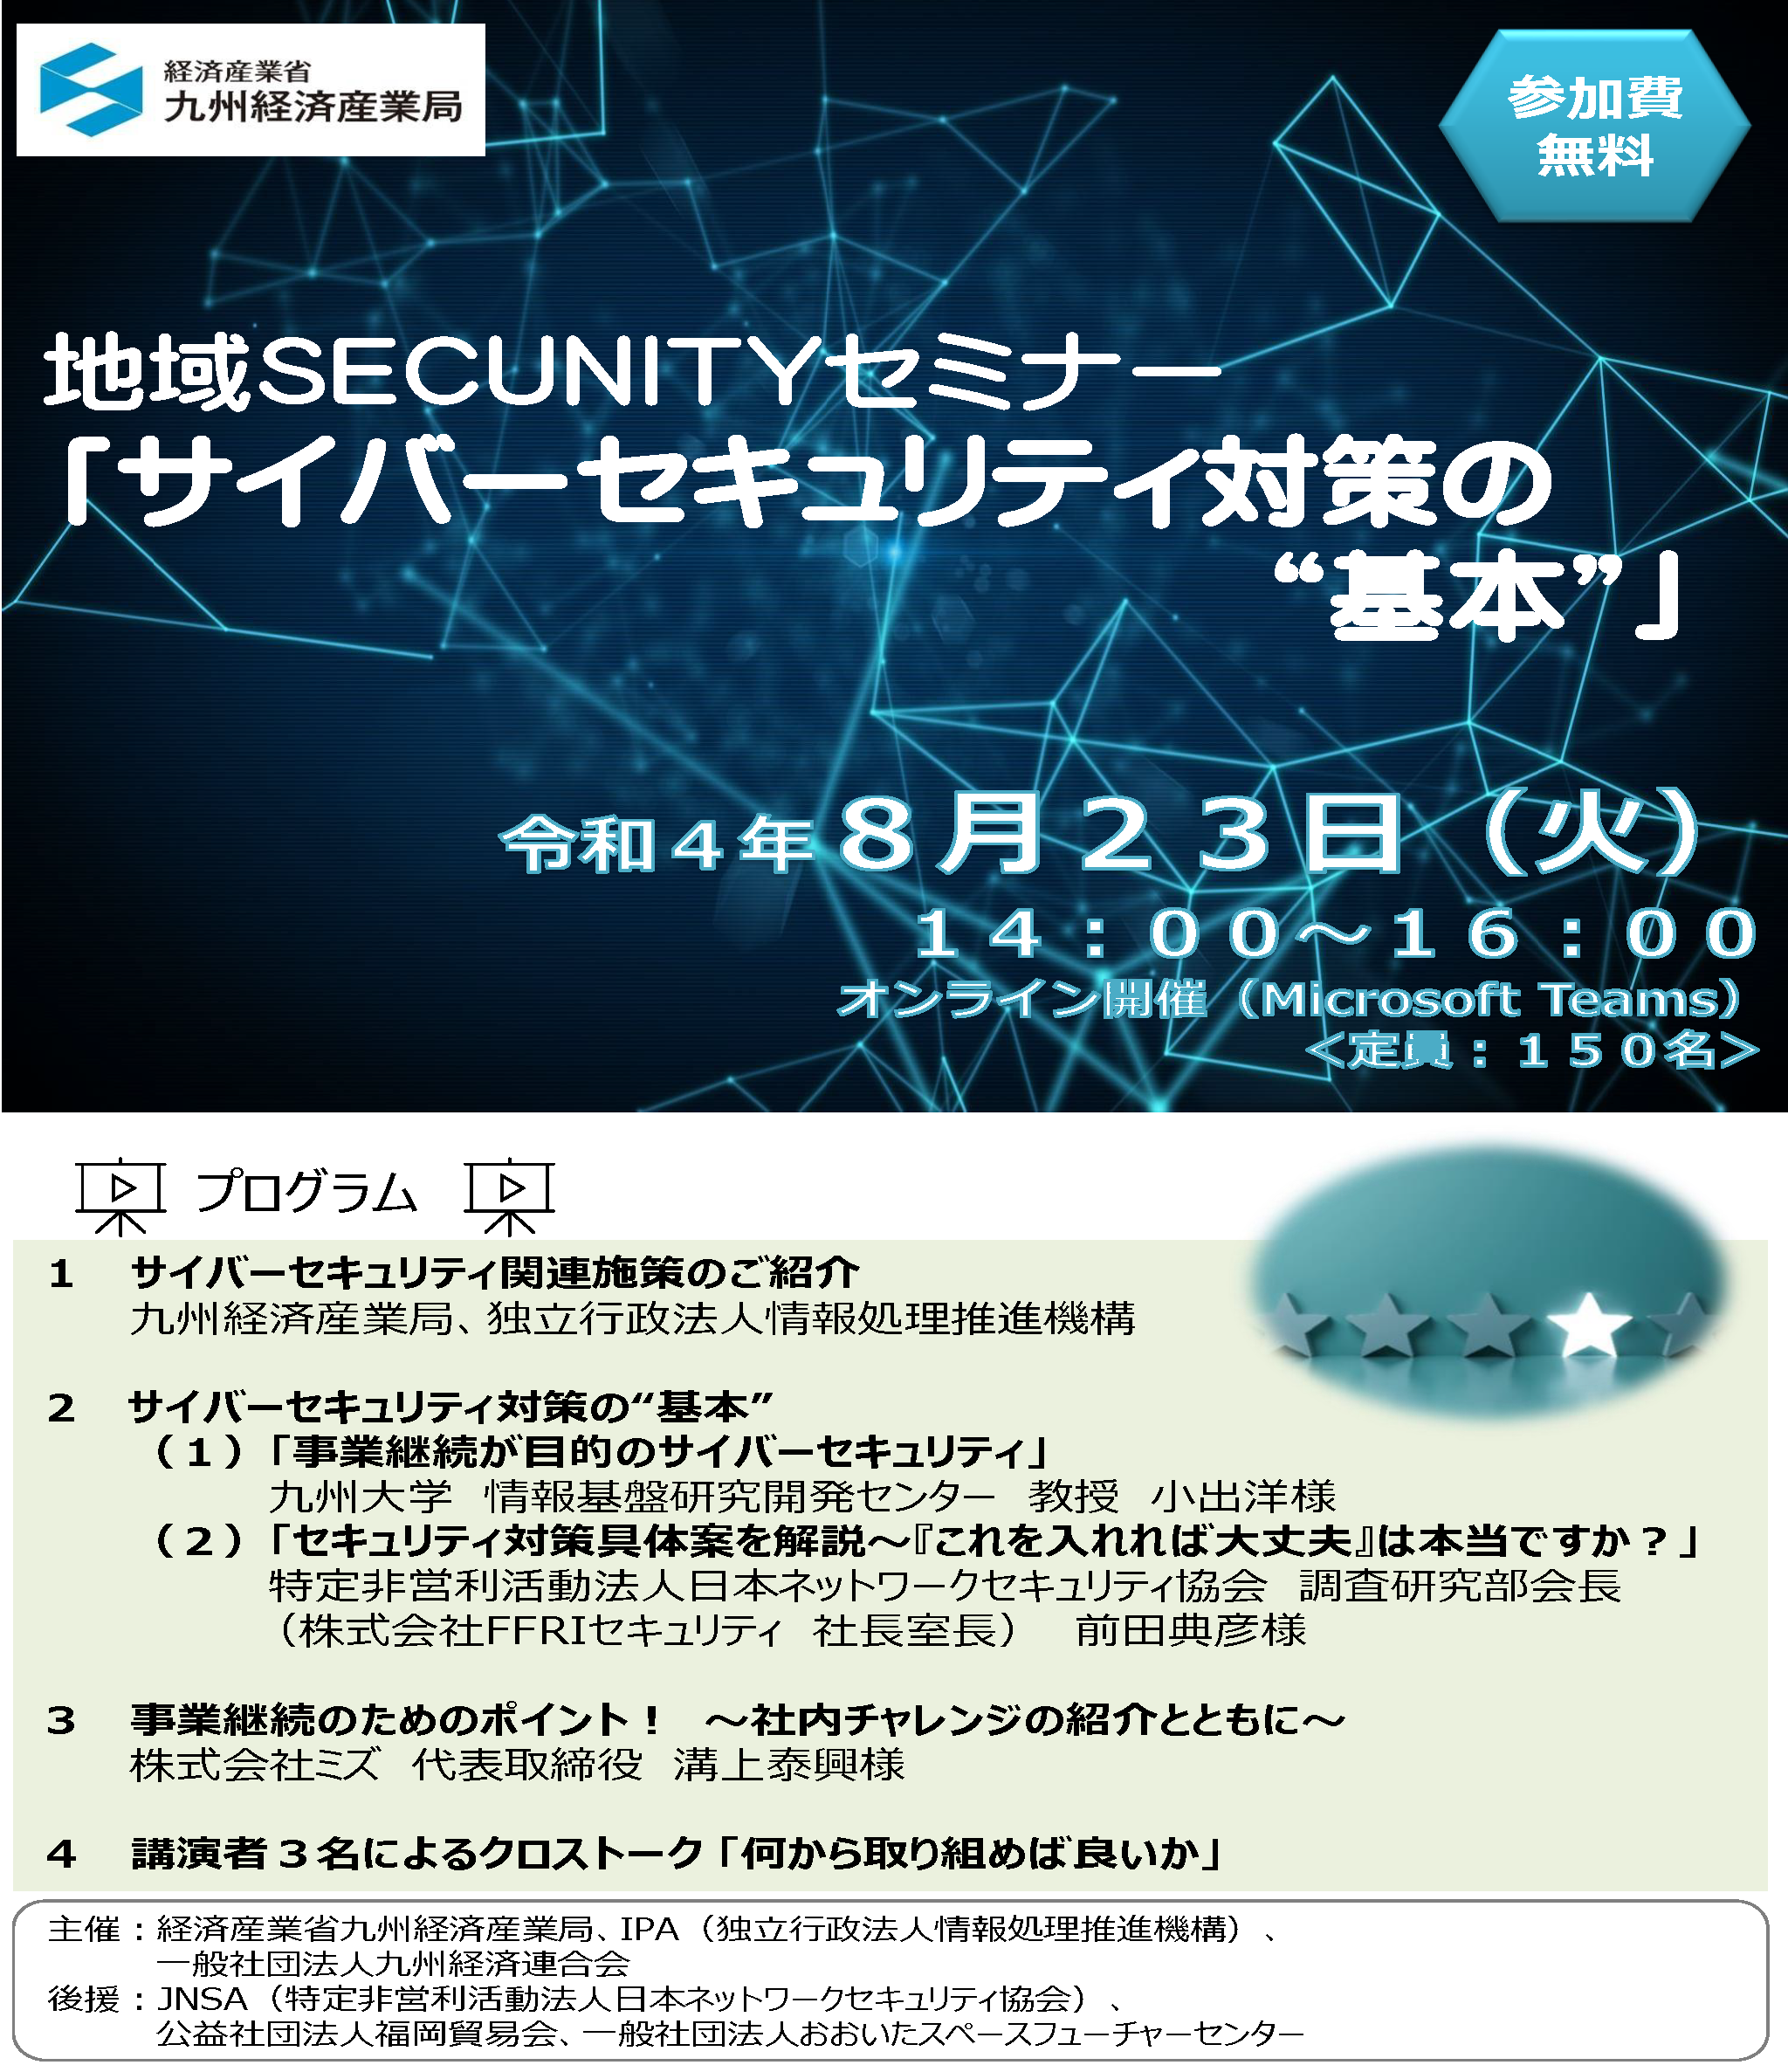 地域SECUNITYセミナー「サイバーセキュリティ対策の“基本”」のお知らせ